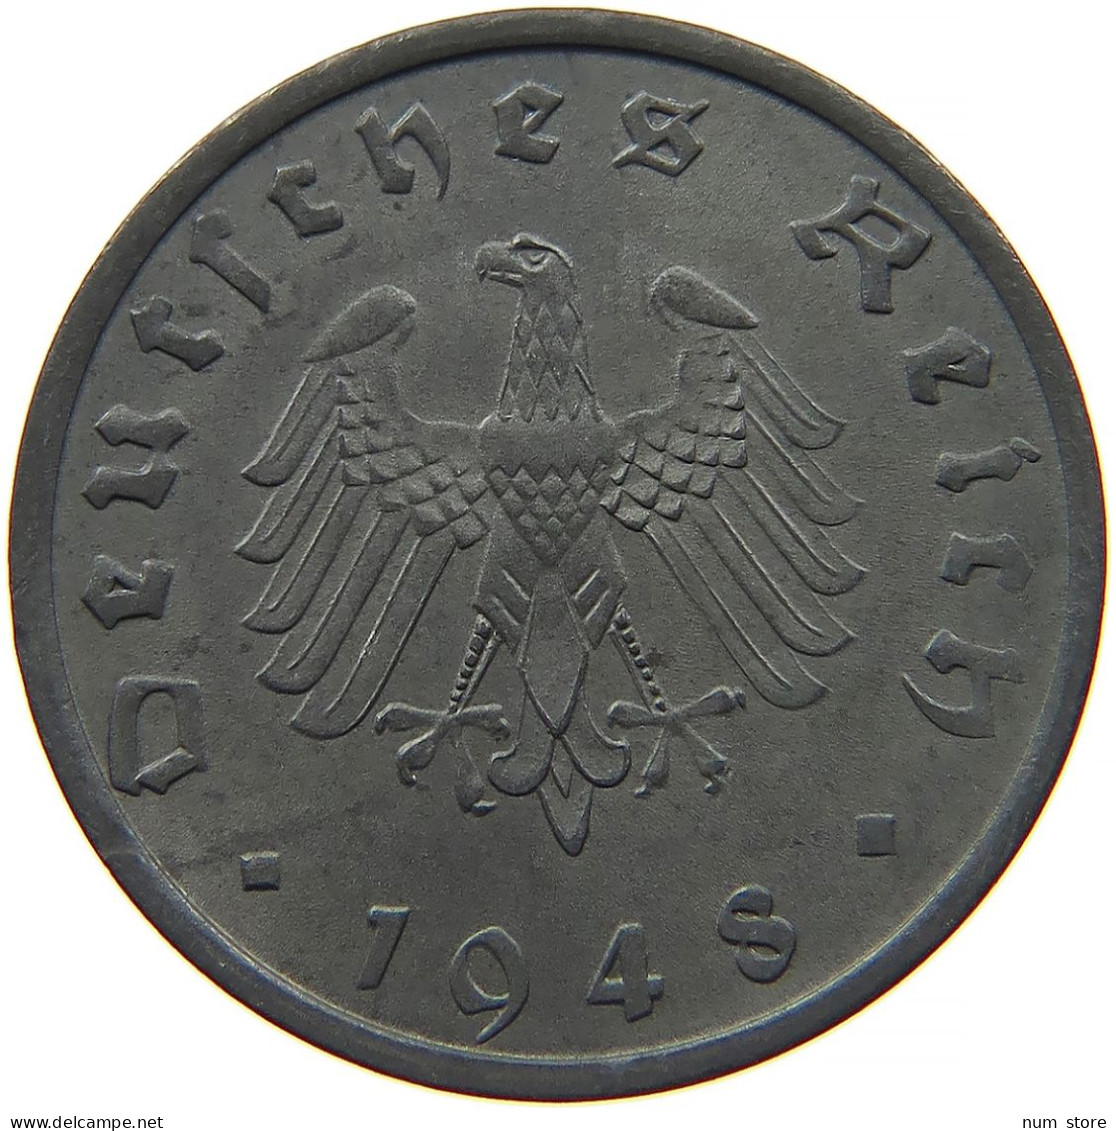 ALLIIERTE BESETZUNG 10 REICHSPFENNIG 1948 A  #t028 0351 - 10 Reichspfennig